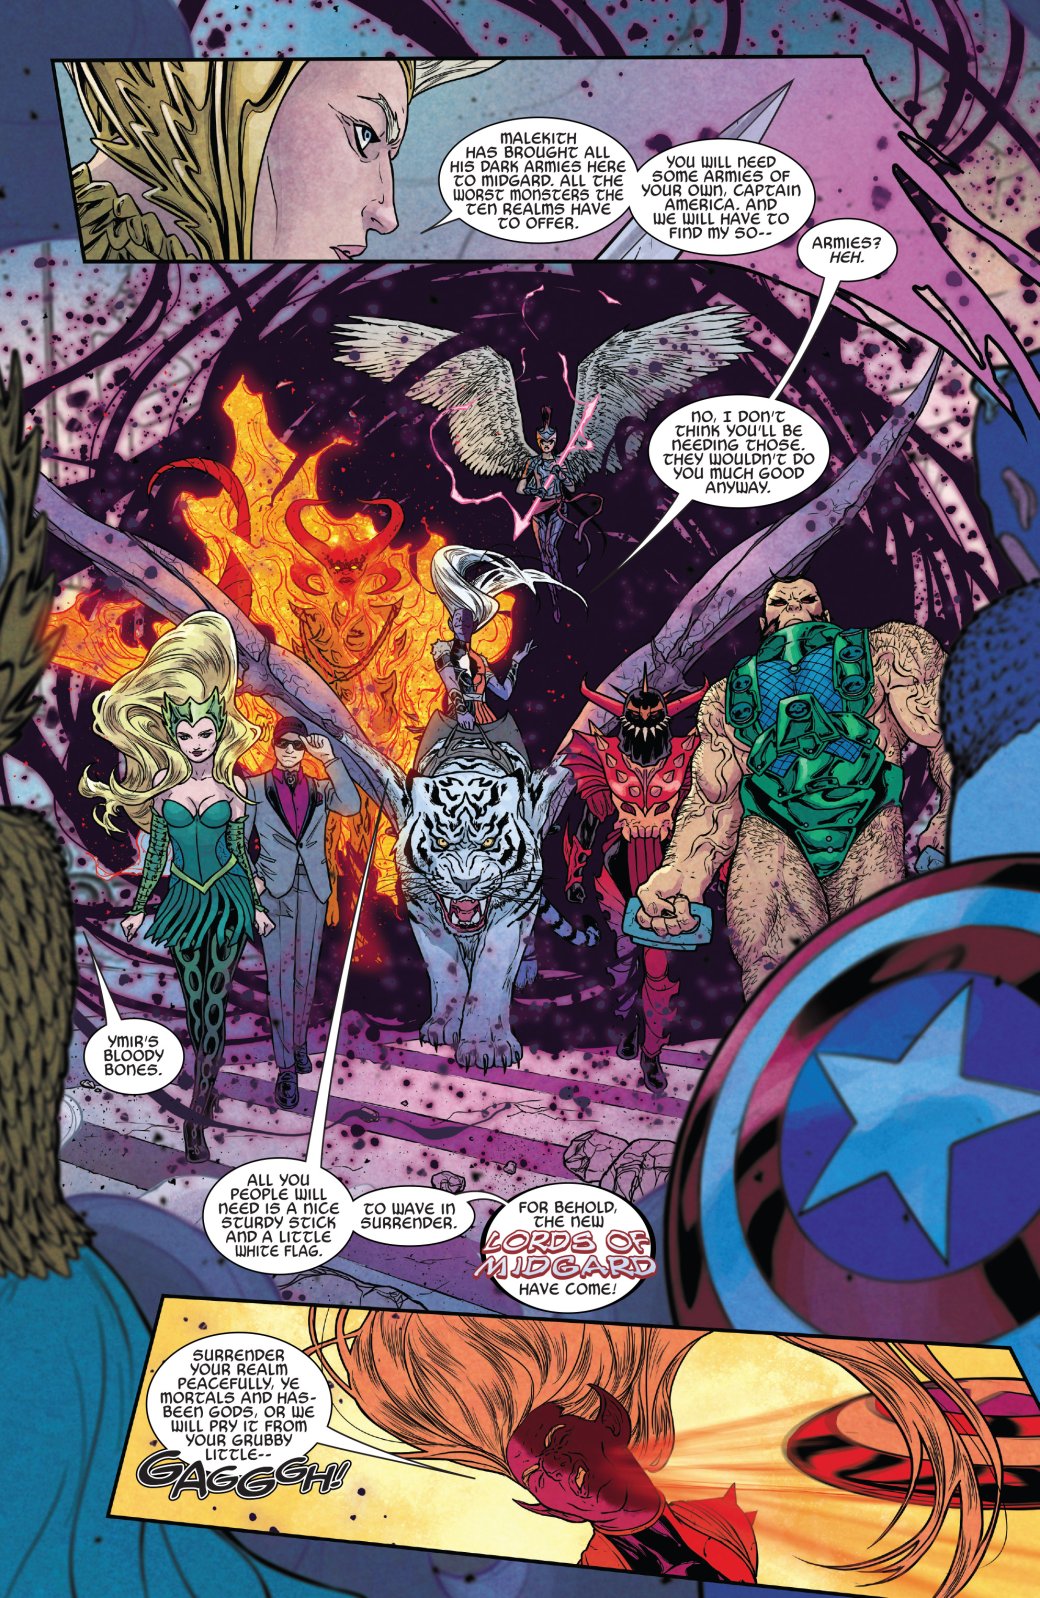 Галерея Что нужно знать о The War of the Realms — новом событии в комиксах Marvel о битве за Мидгард - 2 фото